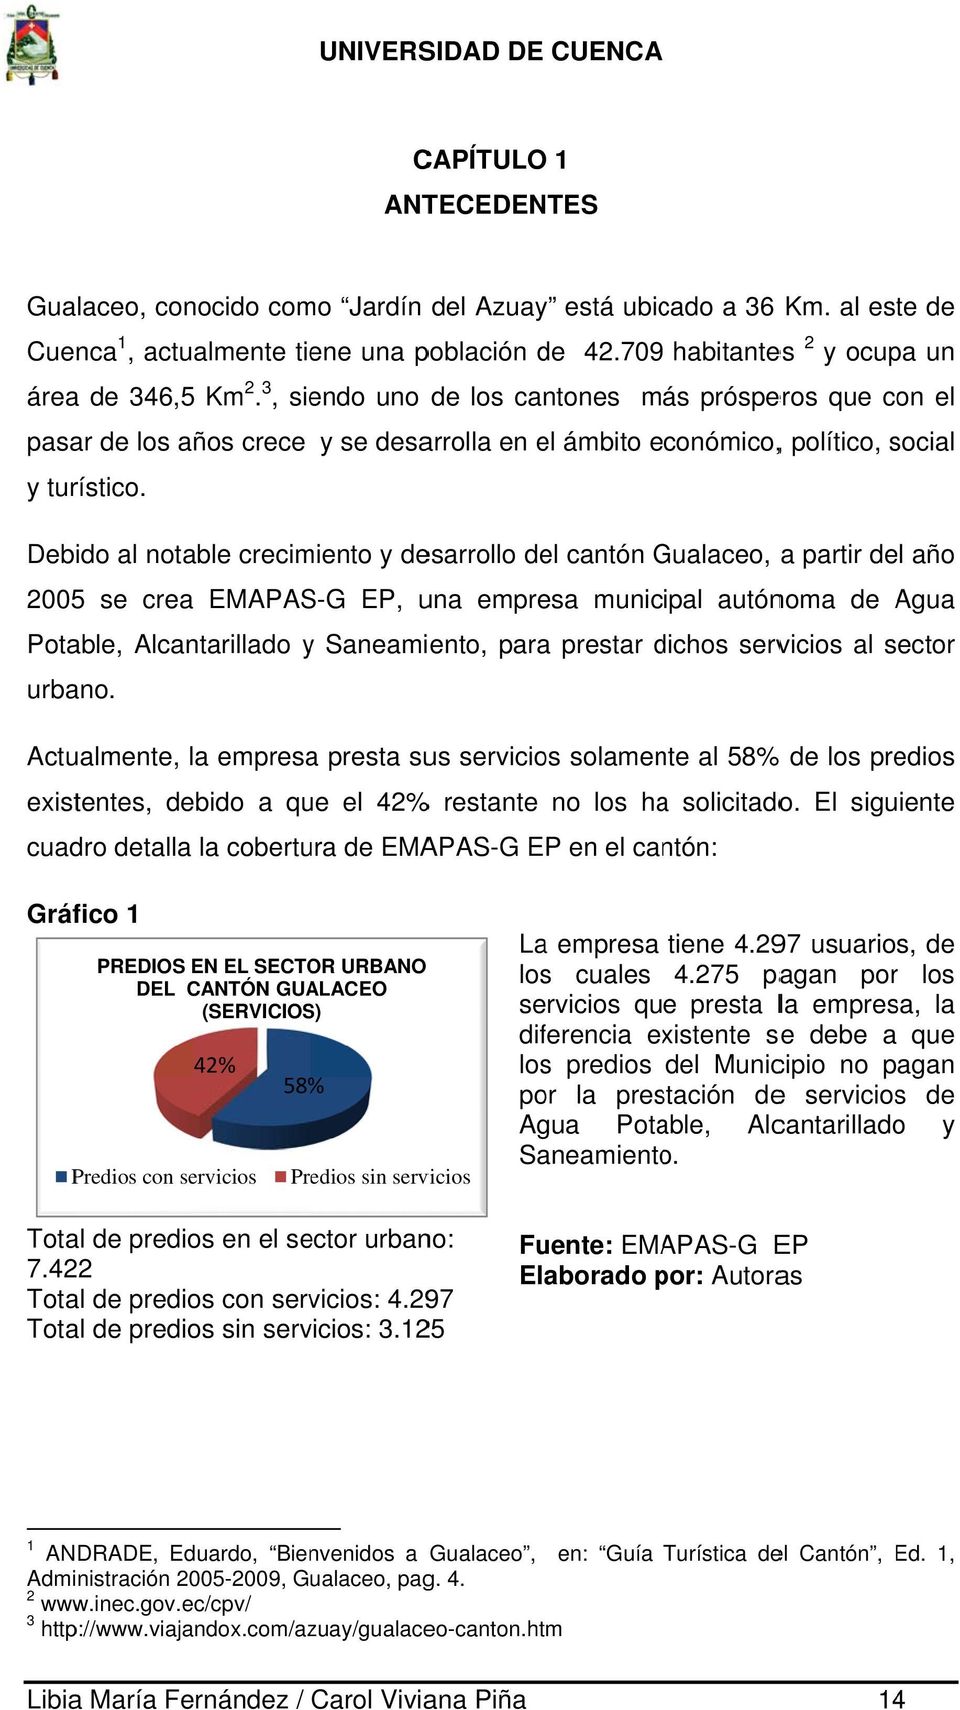 Debido al notable crecimiento y desarrollo del cantón Gualaceo, G a partir del año 2005 se crea EMAPAS-G EP, una empresa municipal autónoma de Agua Potable, Alcantarillado y Saneamiento, paraa